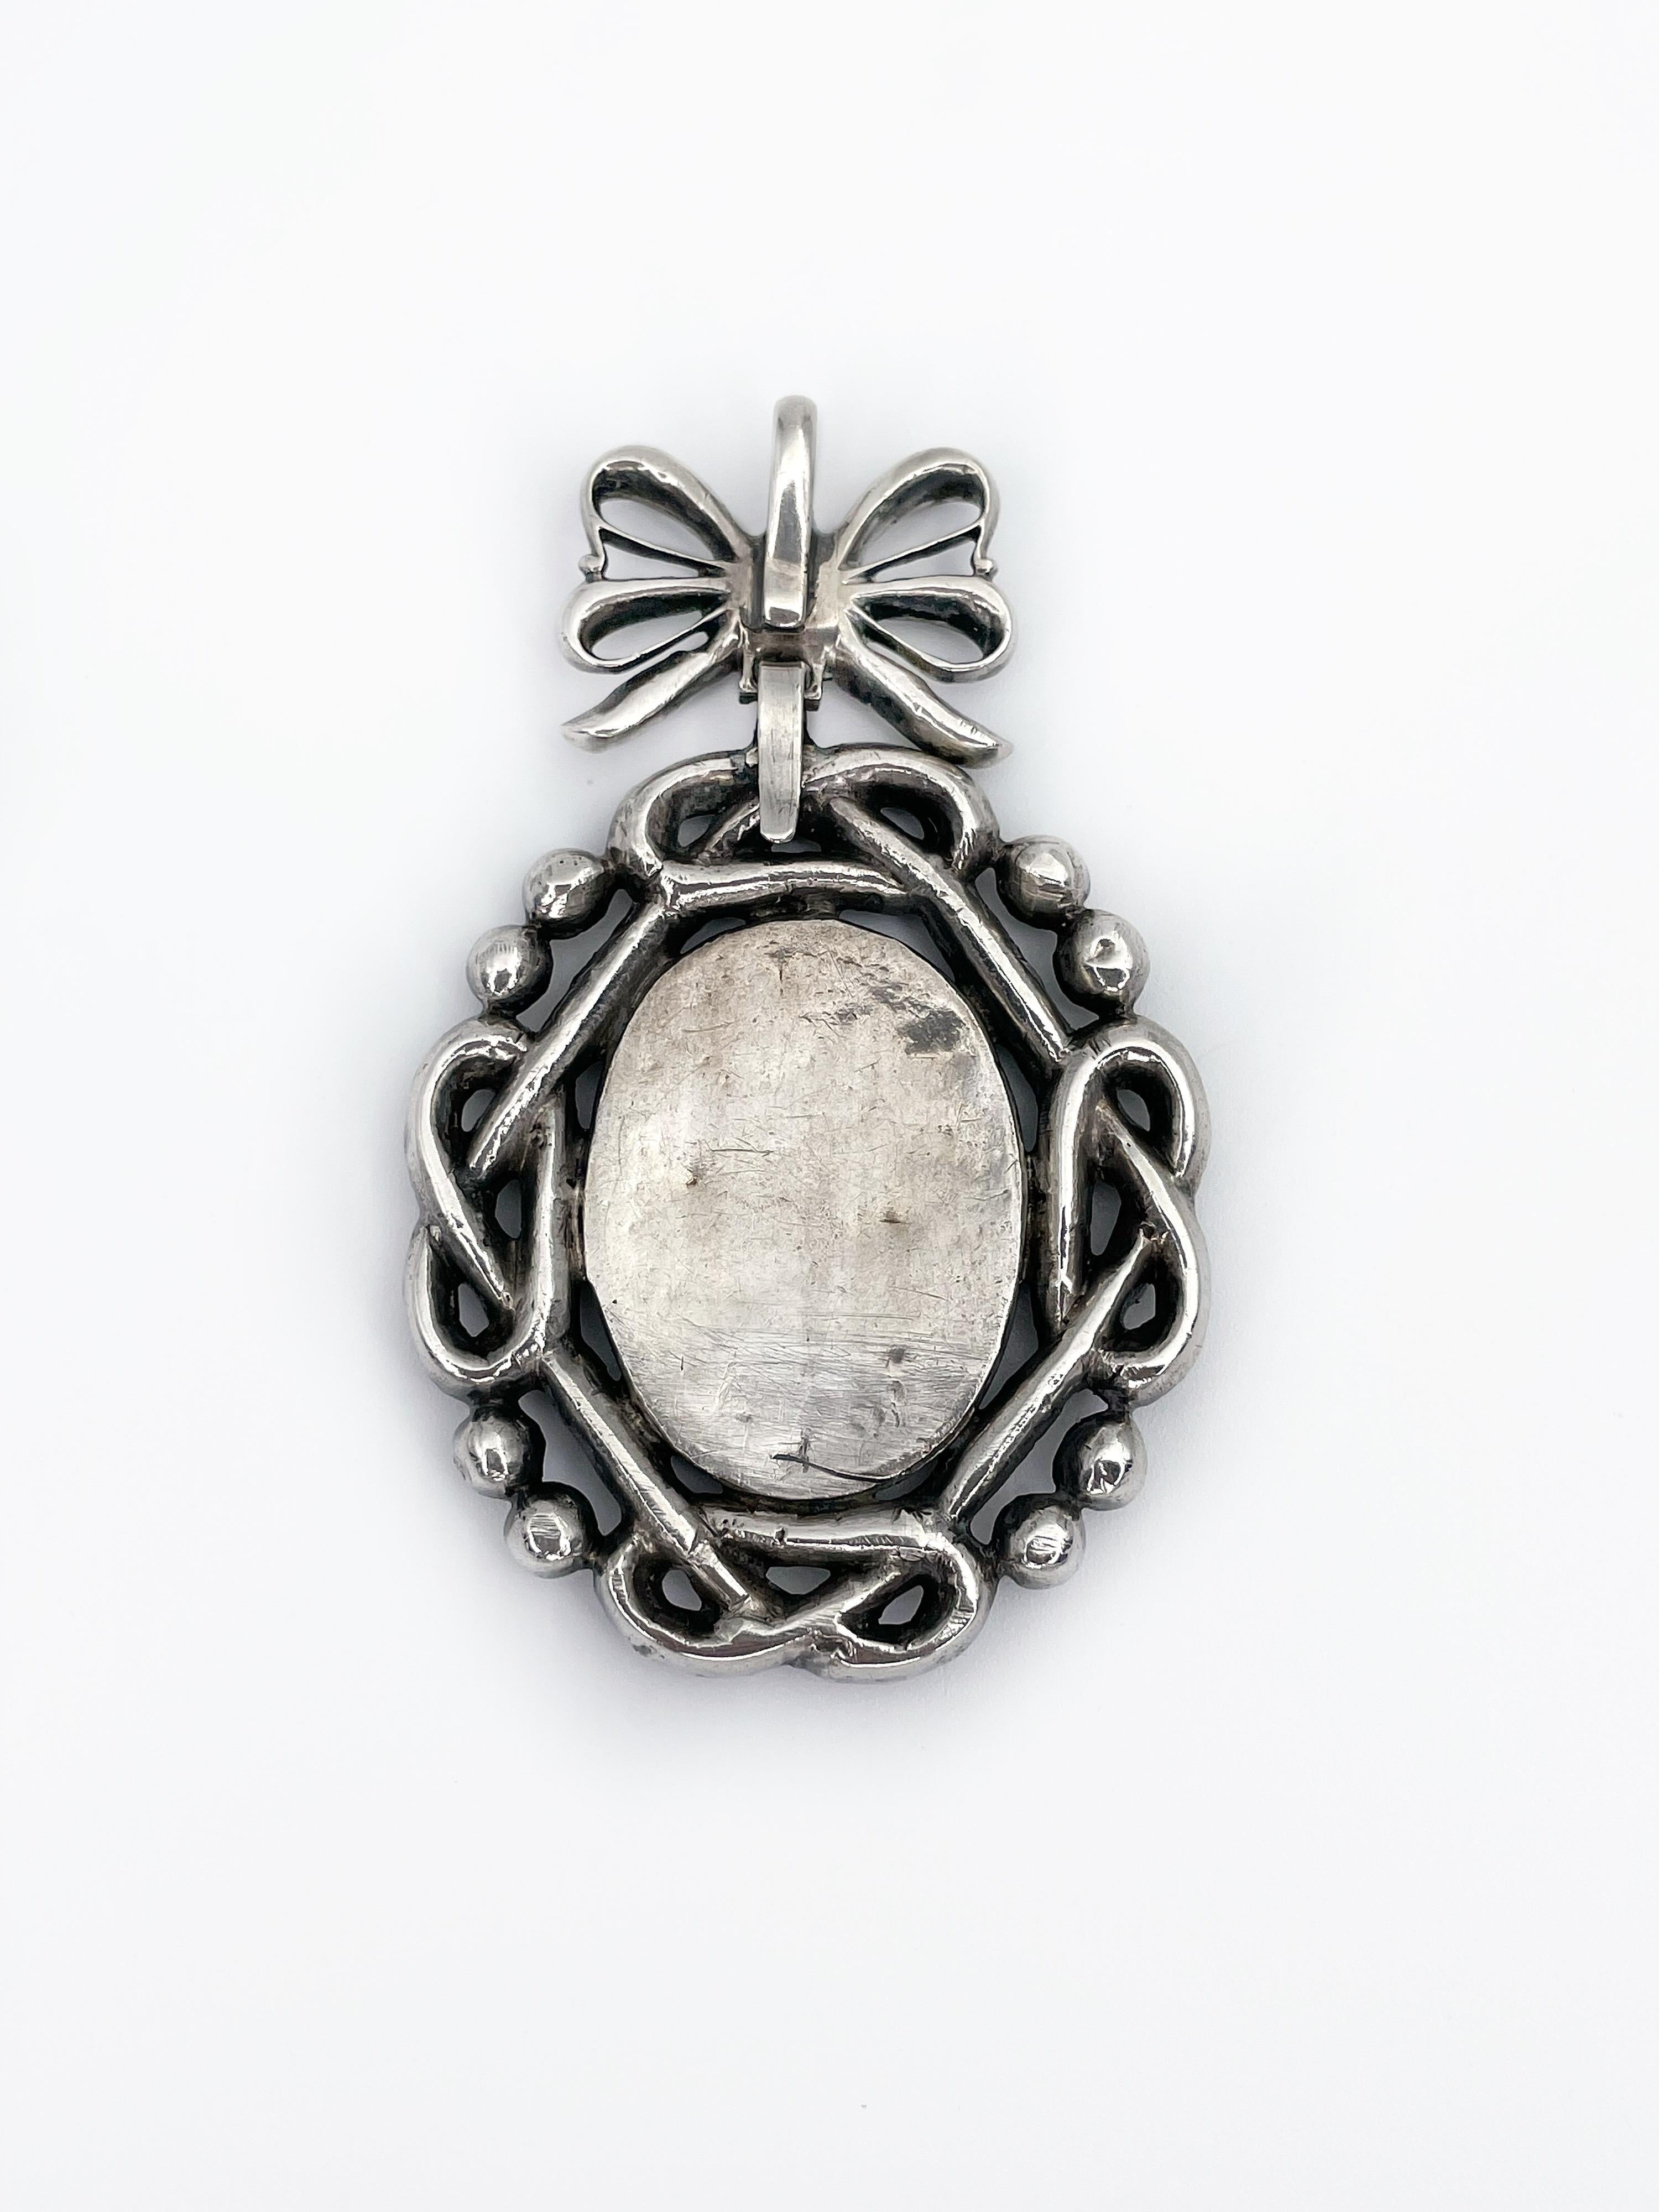 18th century pendant